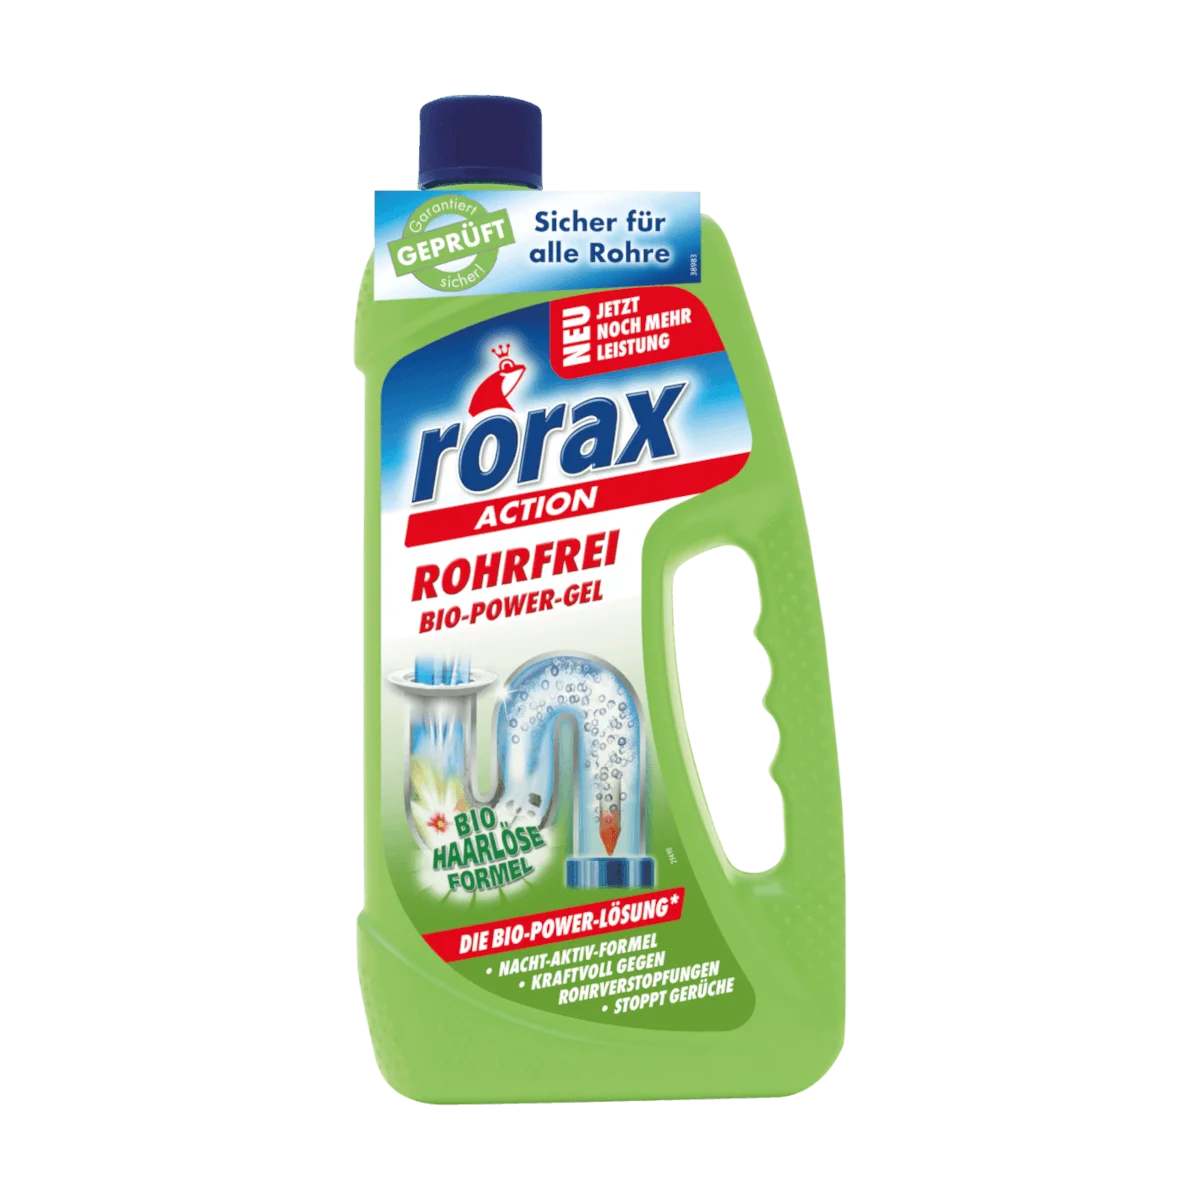 Rorax Rohrreiniger Rohrfrei Bio-Power-Gel, 1 l